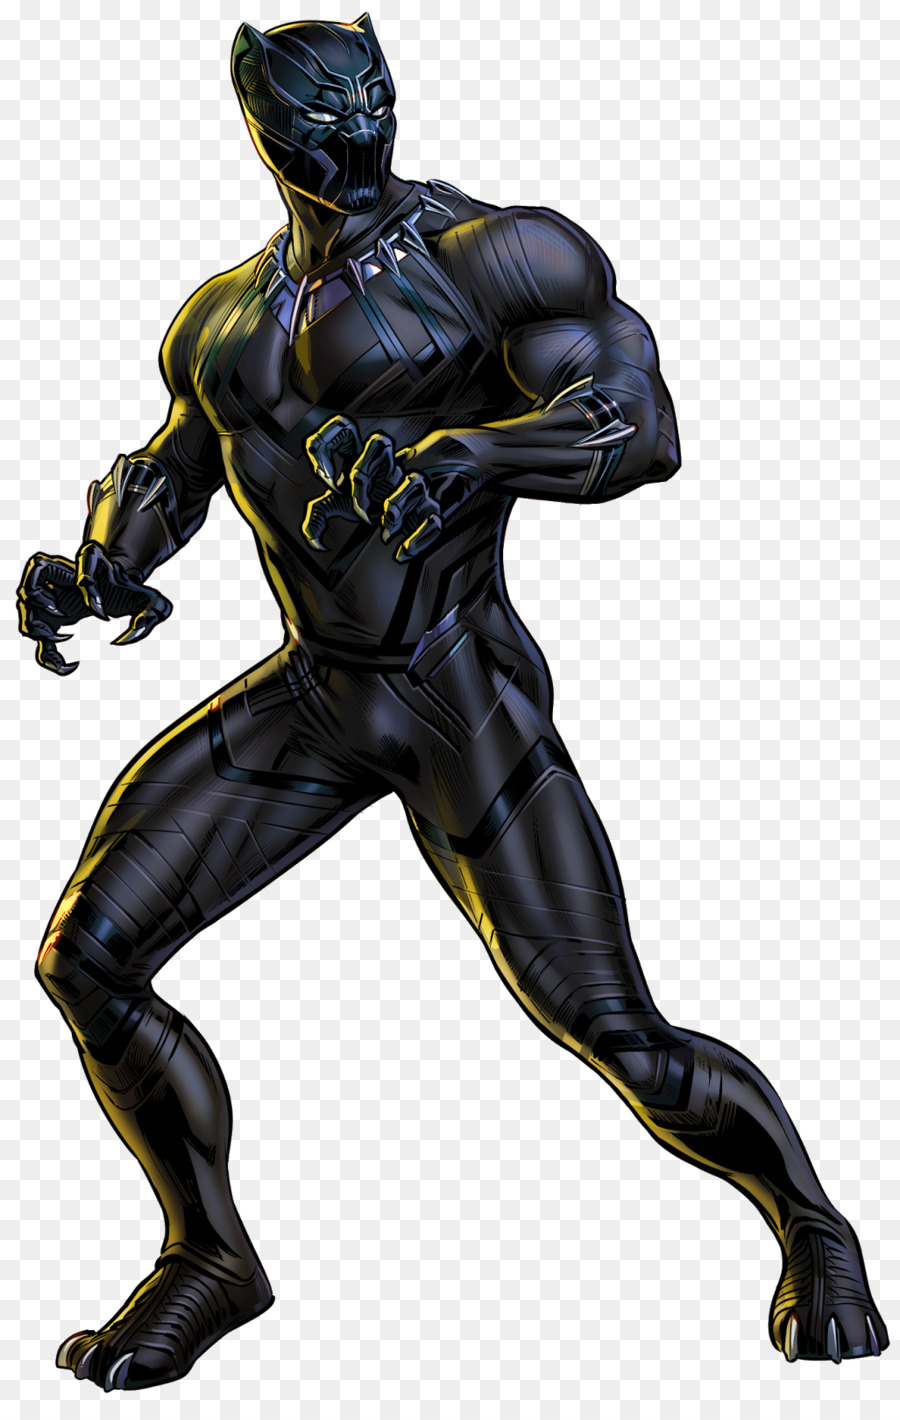 Black Panther Marvel: Avengers Alliance Black Bolt Marvel Cinematic Universe Marvel Comics - black panther png download - 1027*1600 - Free Transparent Black Panther png Download.